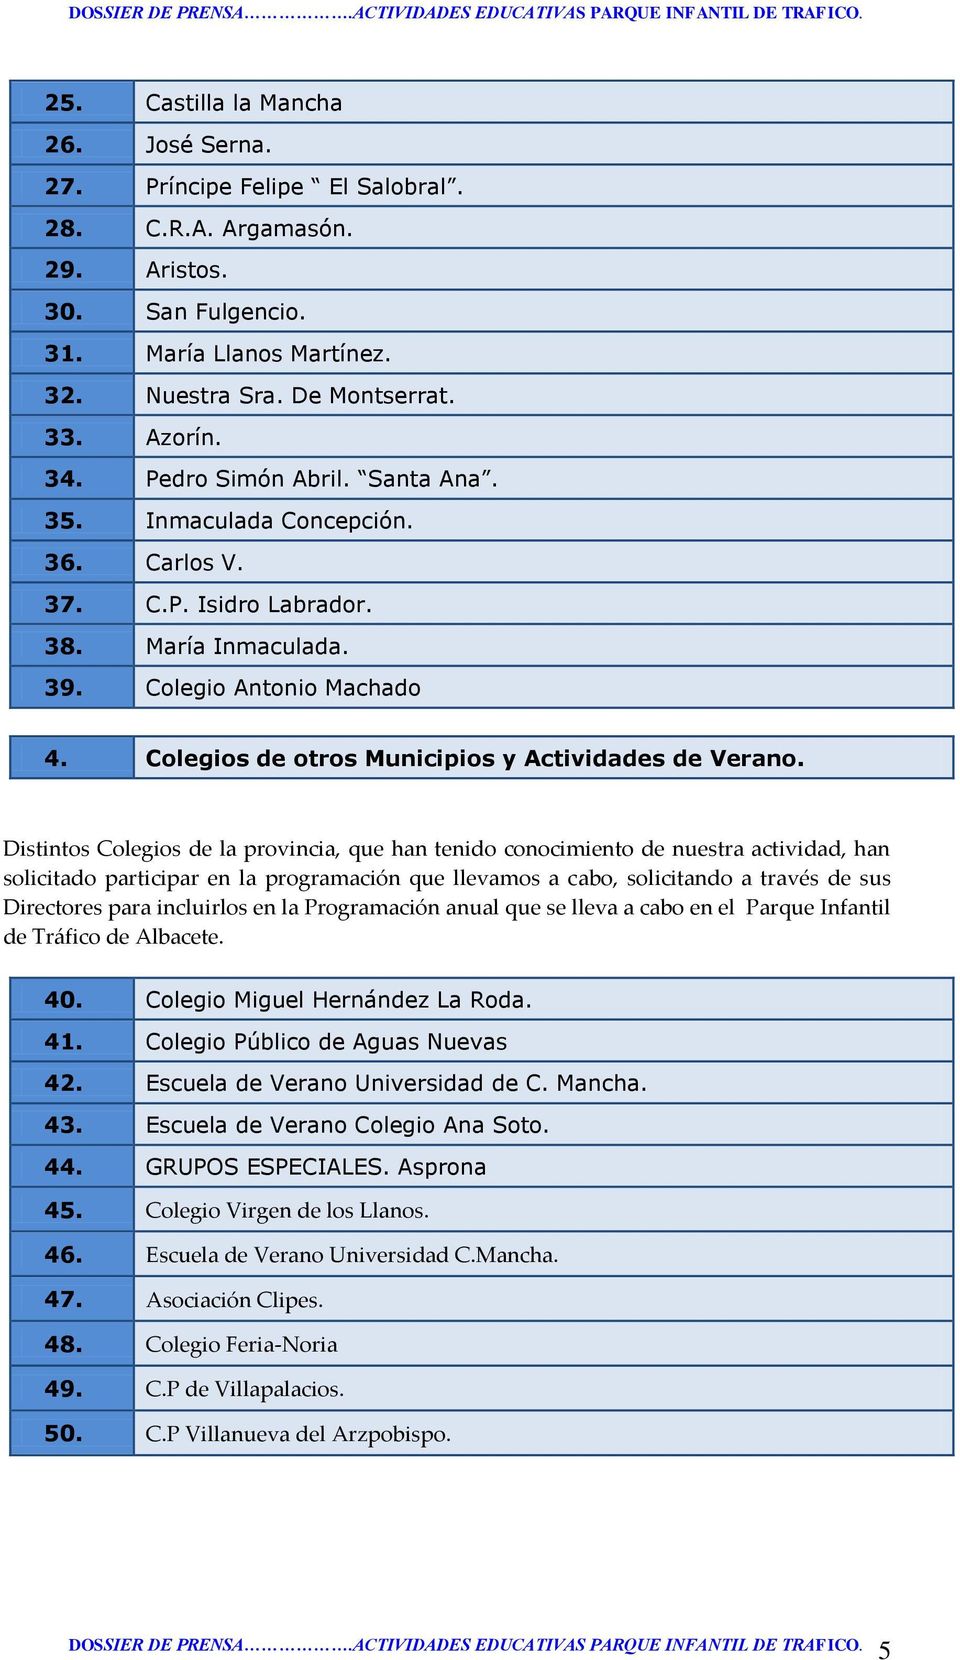 Colegios de otros Municipios y Actividades de Verano.